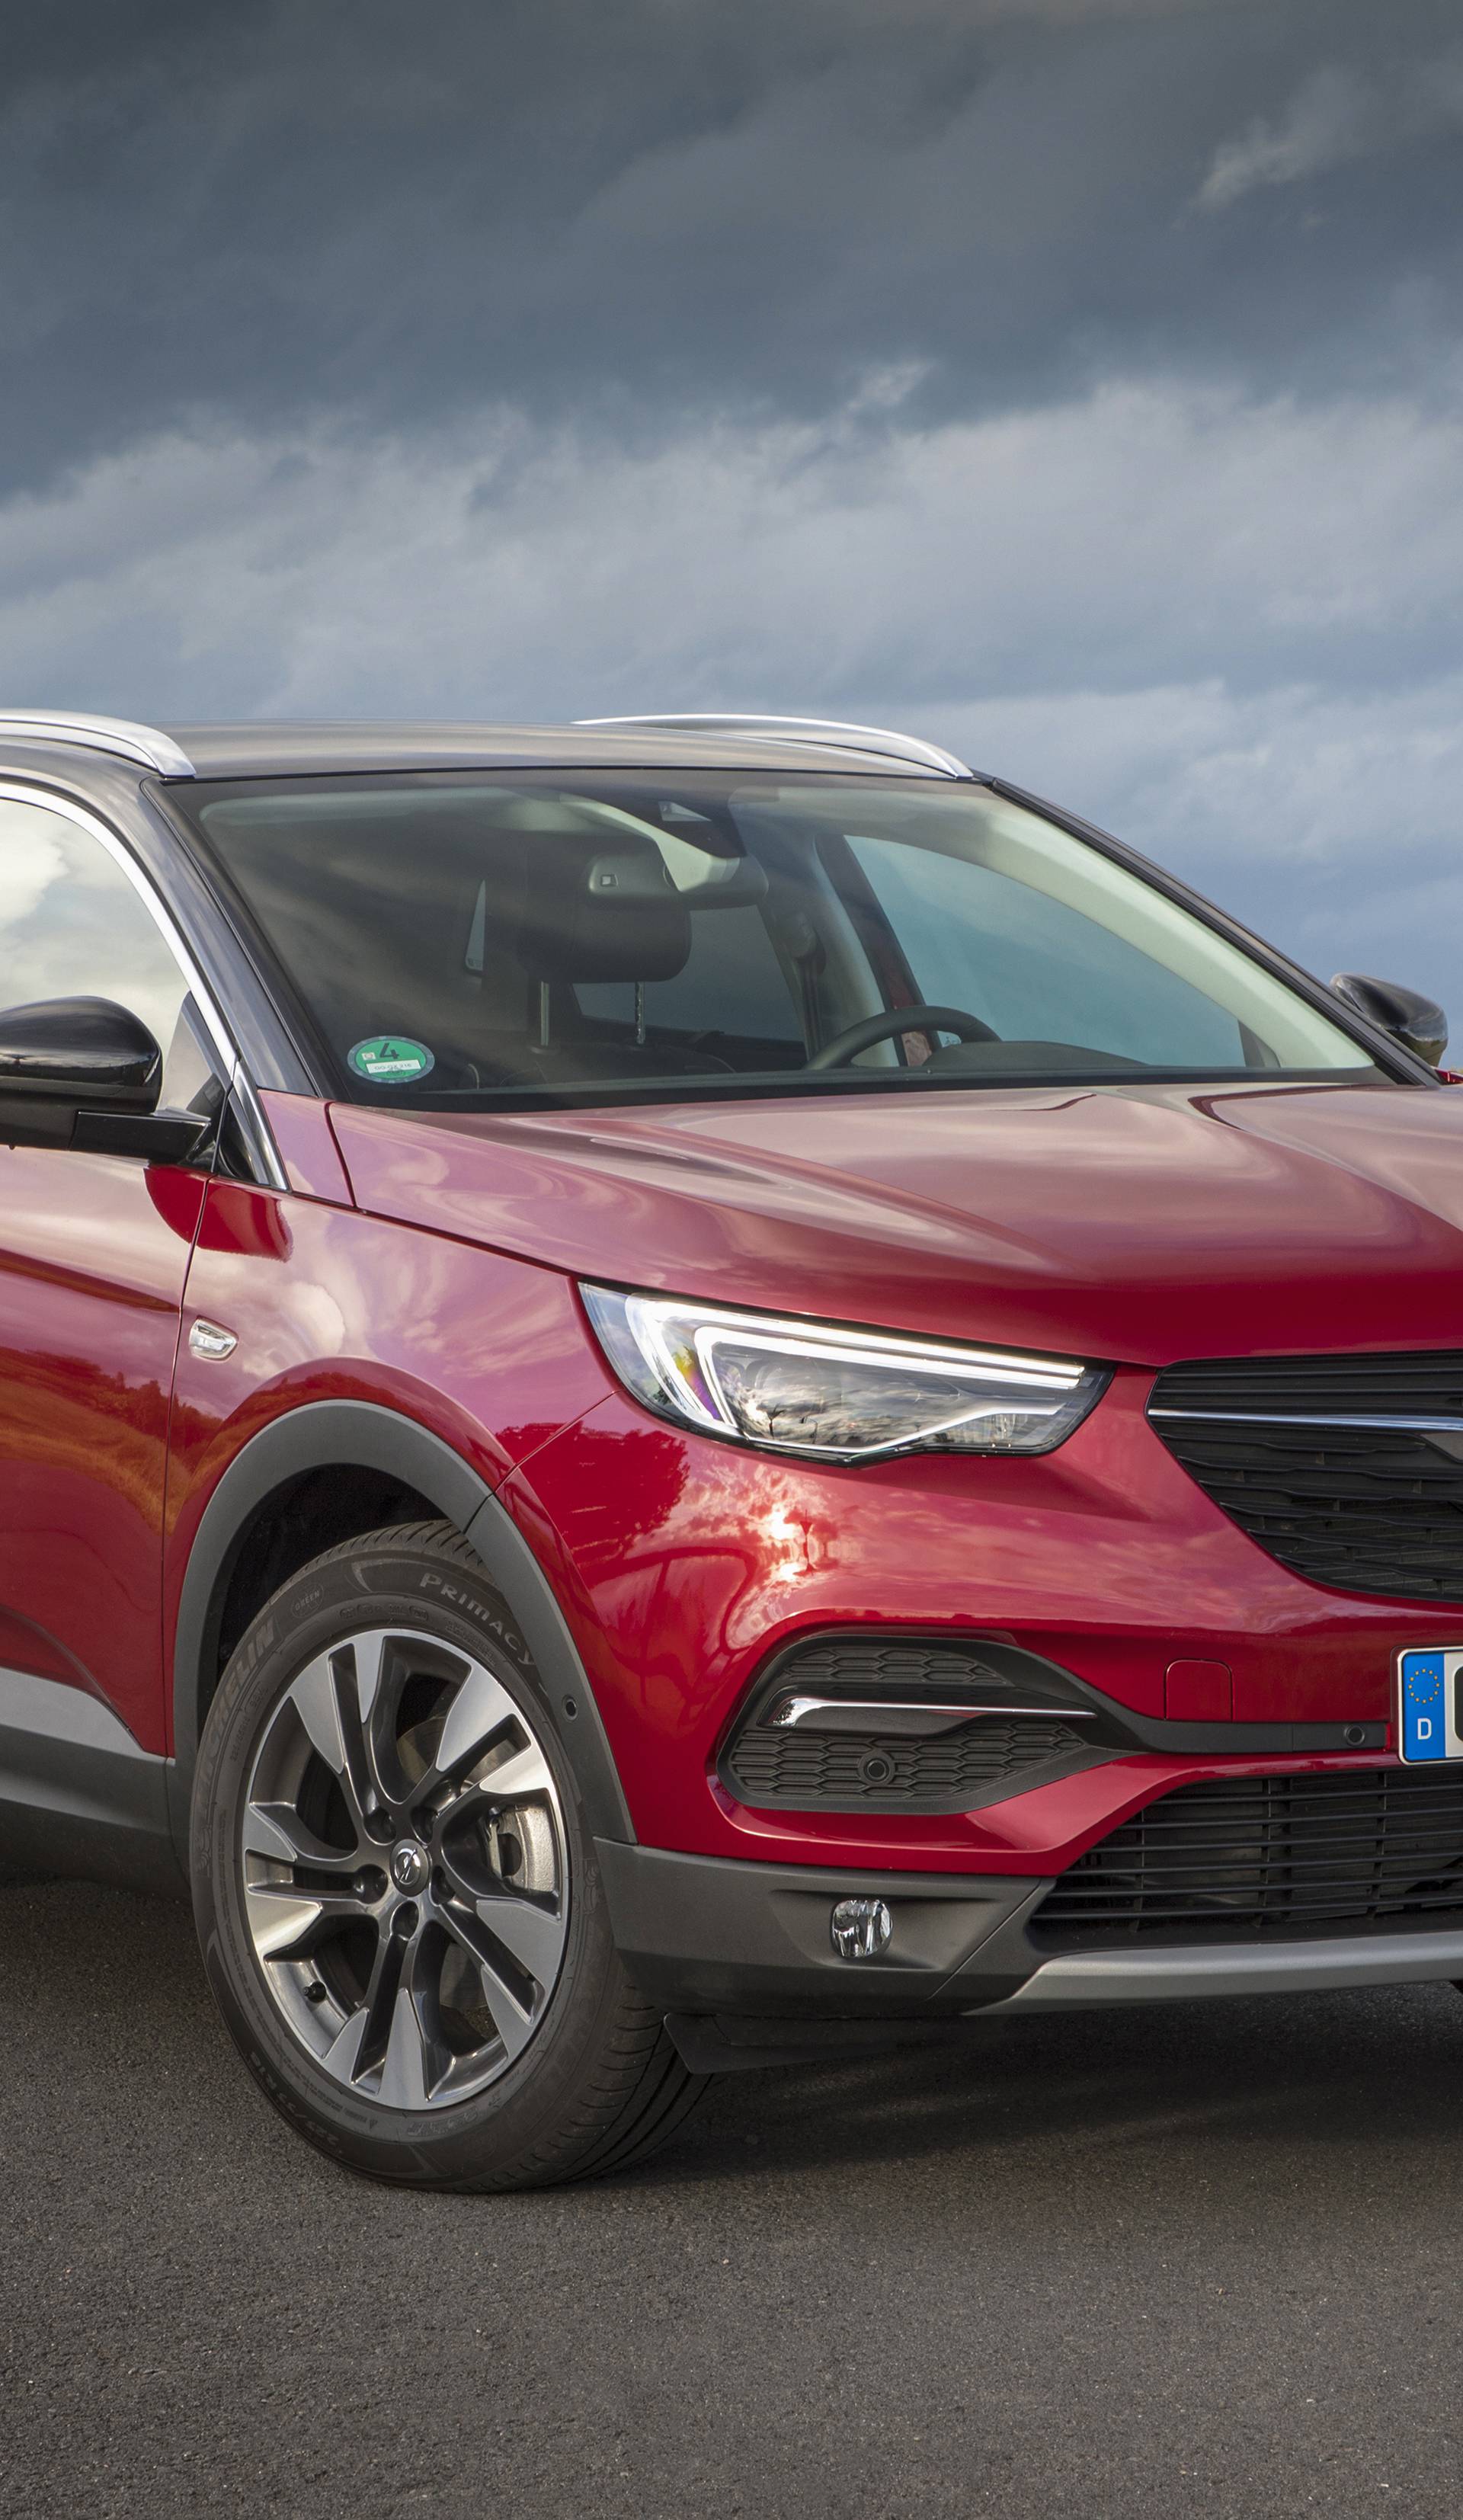 Opel s X faktorom: Isprobali smo najveći SUV Grandland X